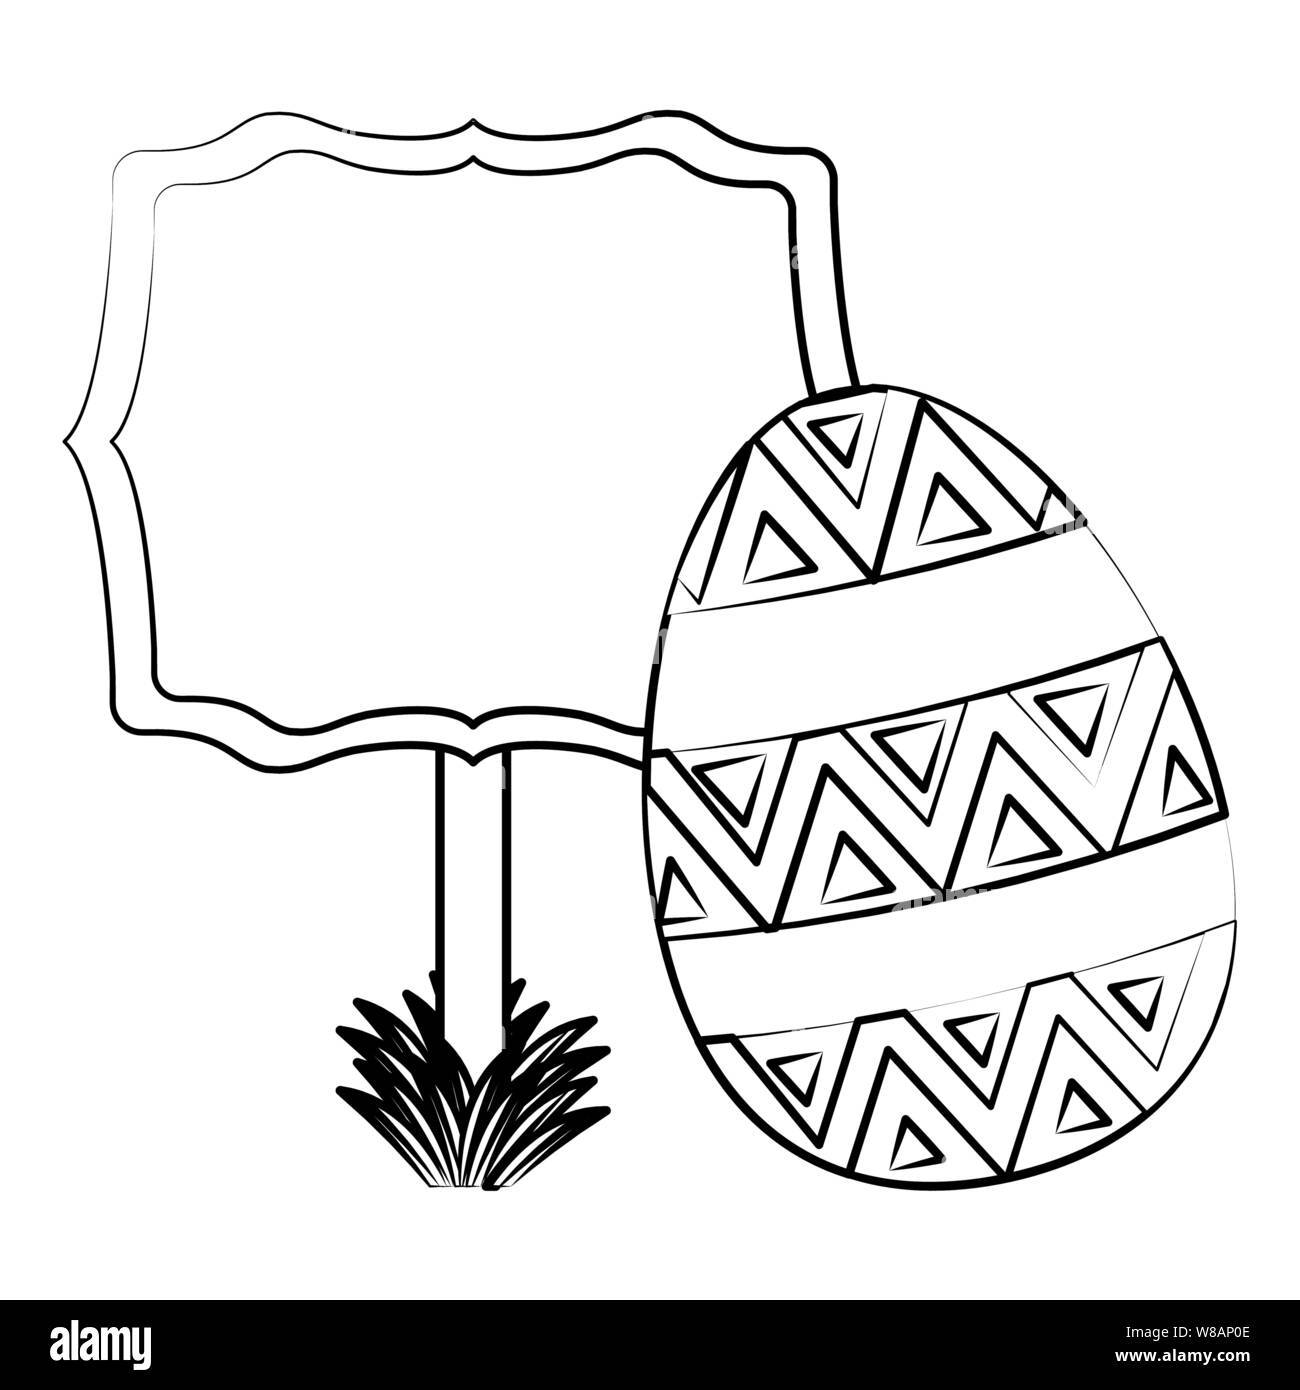 Pascua feliz tradición celebración caricatura dibujo en blanco y negro  Imagen Vector de stock - Alamy